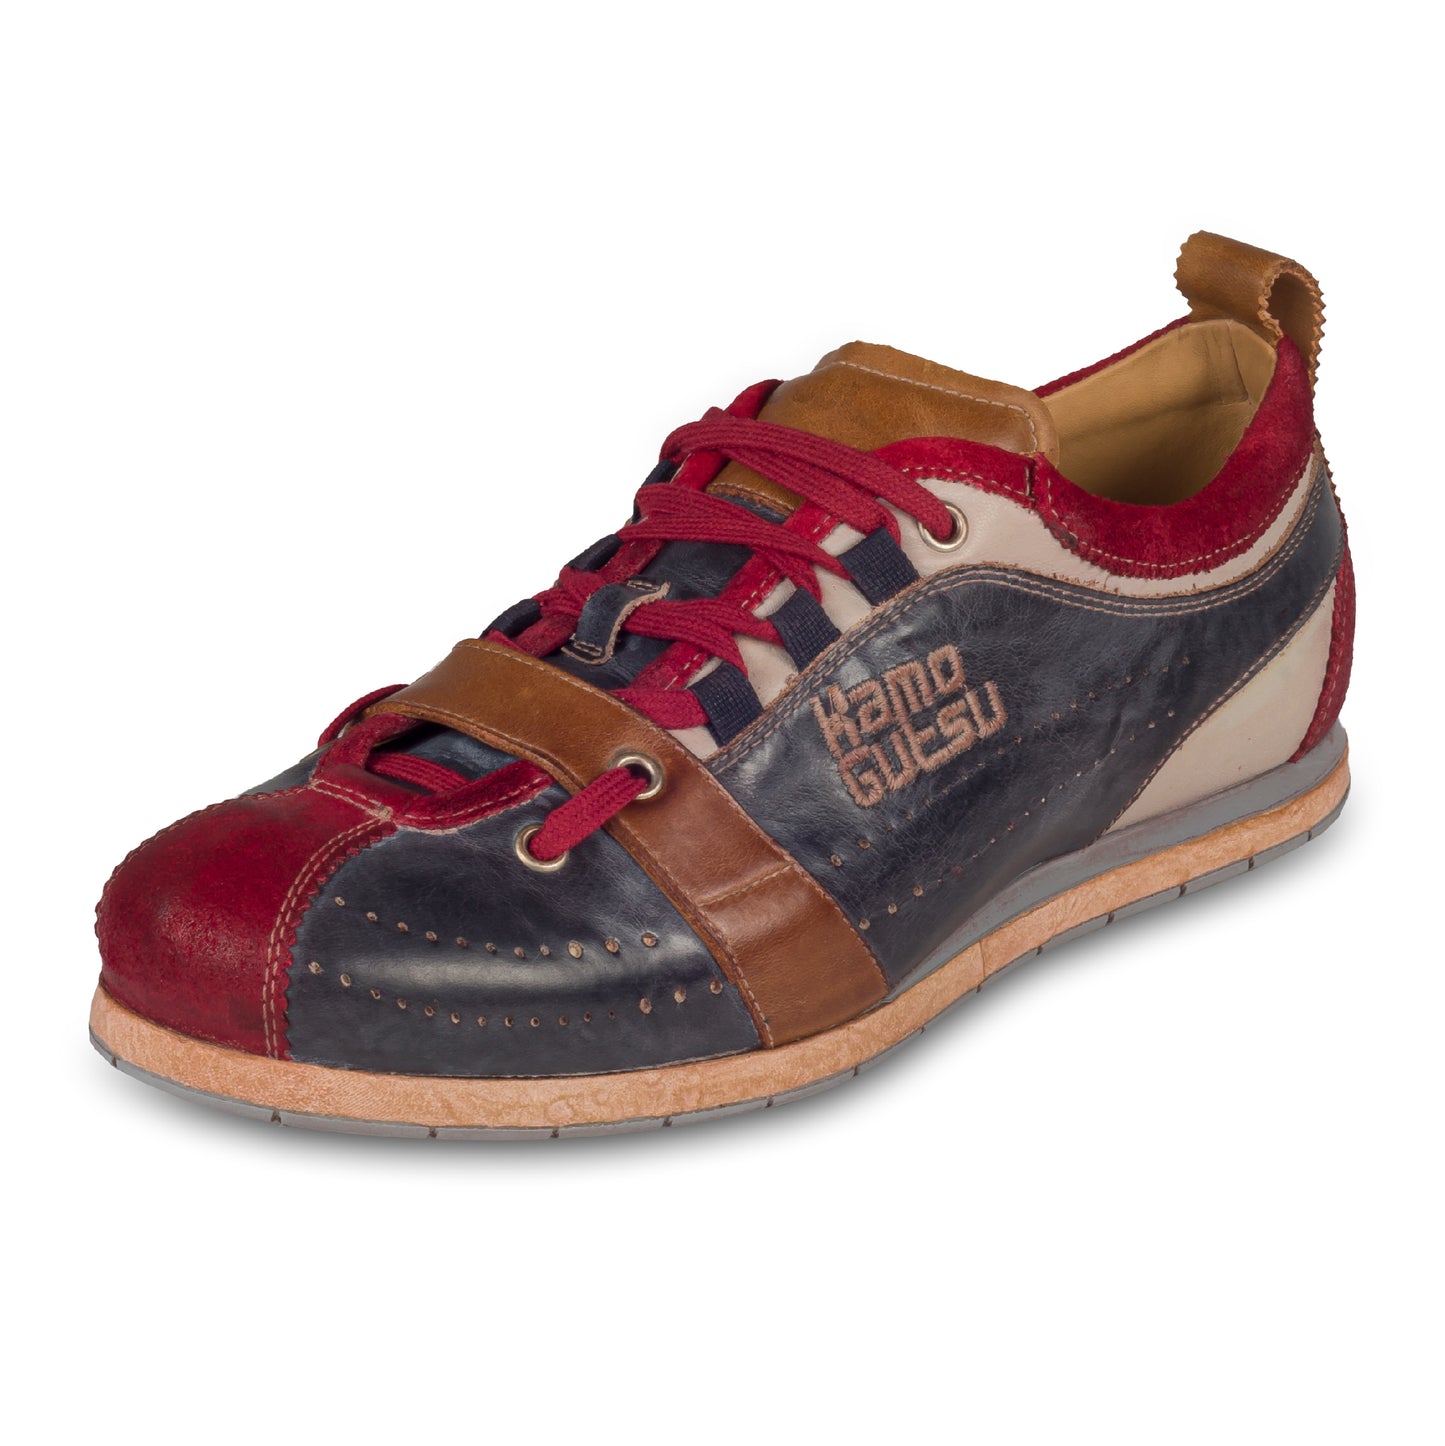 KAMO-GUTSU Herren Leder Sneaker, blau/rot mit braun, Modell TIFO-017 rosso + navy. Handgefertigt. Schräge Ansicht linker Schuh.